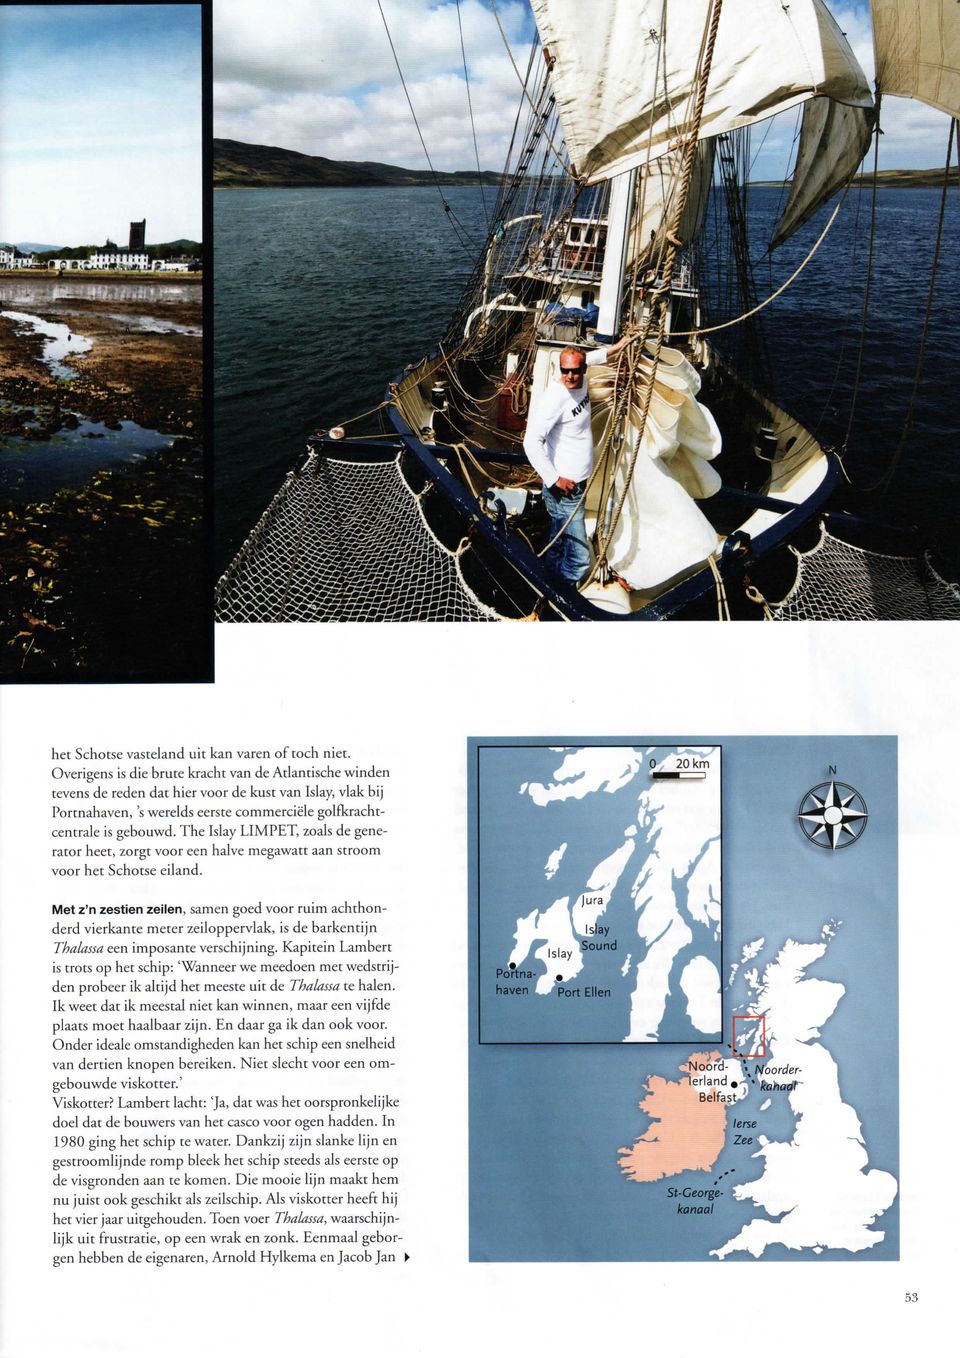 The Islay LIMPET, zoals de generator heet, zorgt voor een halve megawatt aan stroom voor het Schotse eiland.